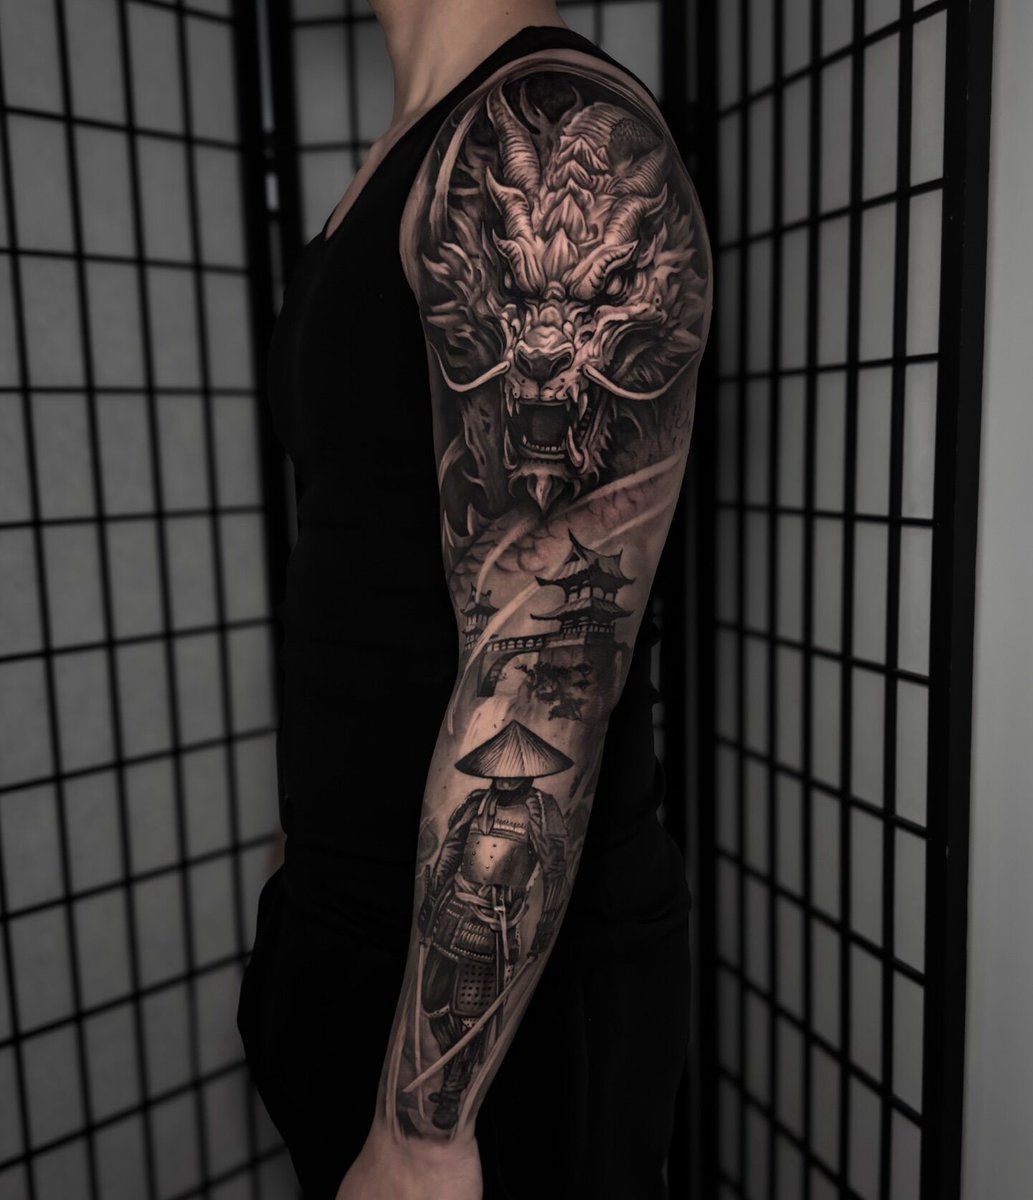 Amazing full-sleeve tattoo by Alex Niglio Tattoos by Melbourne 

#tattoo #tattooideas #tatts #tattoodesign #designideas #tattoos #inked #artist #australianartist #tattooer #tattooist #amazingtattoo #tattoodesignideas #tattooconnect 
#fullsleeve #blackinked #dragontattoo